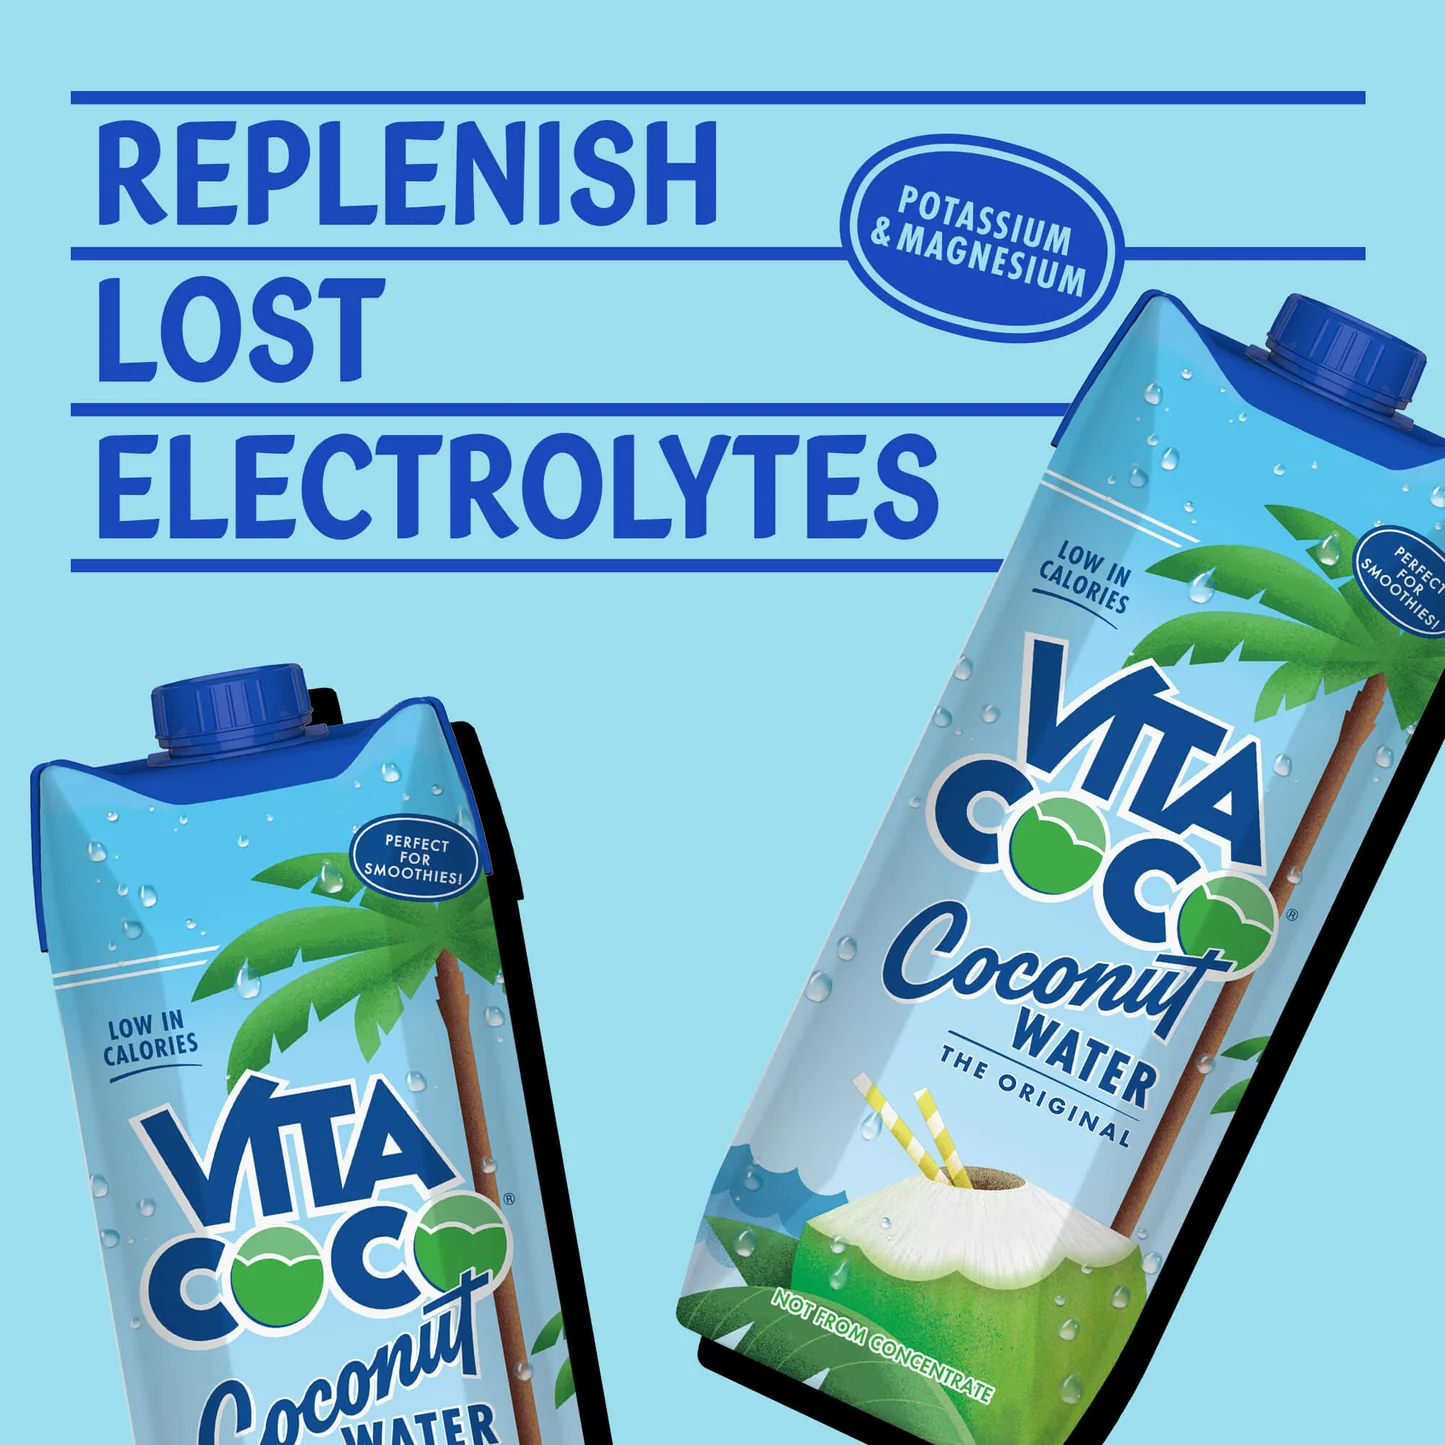 Vita Coco Coconut Water The Original 330ml